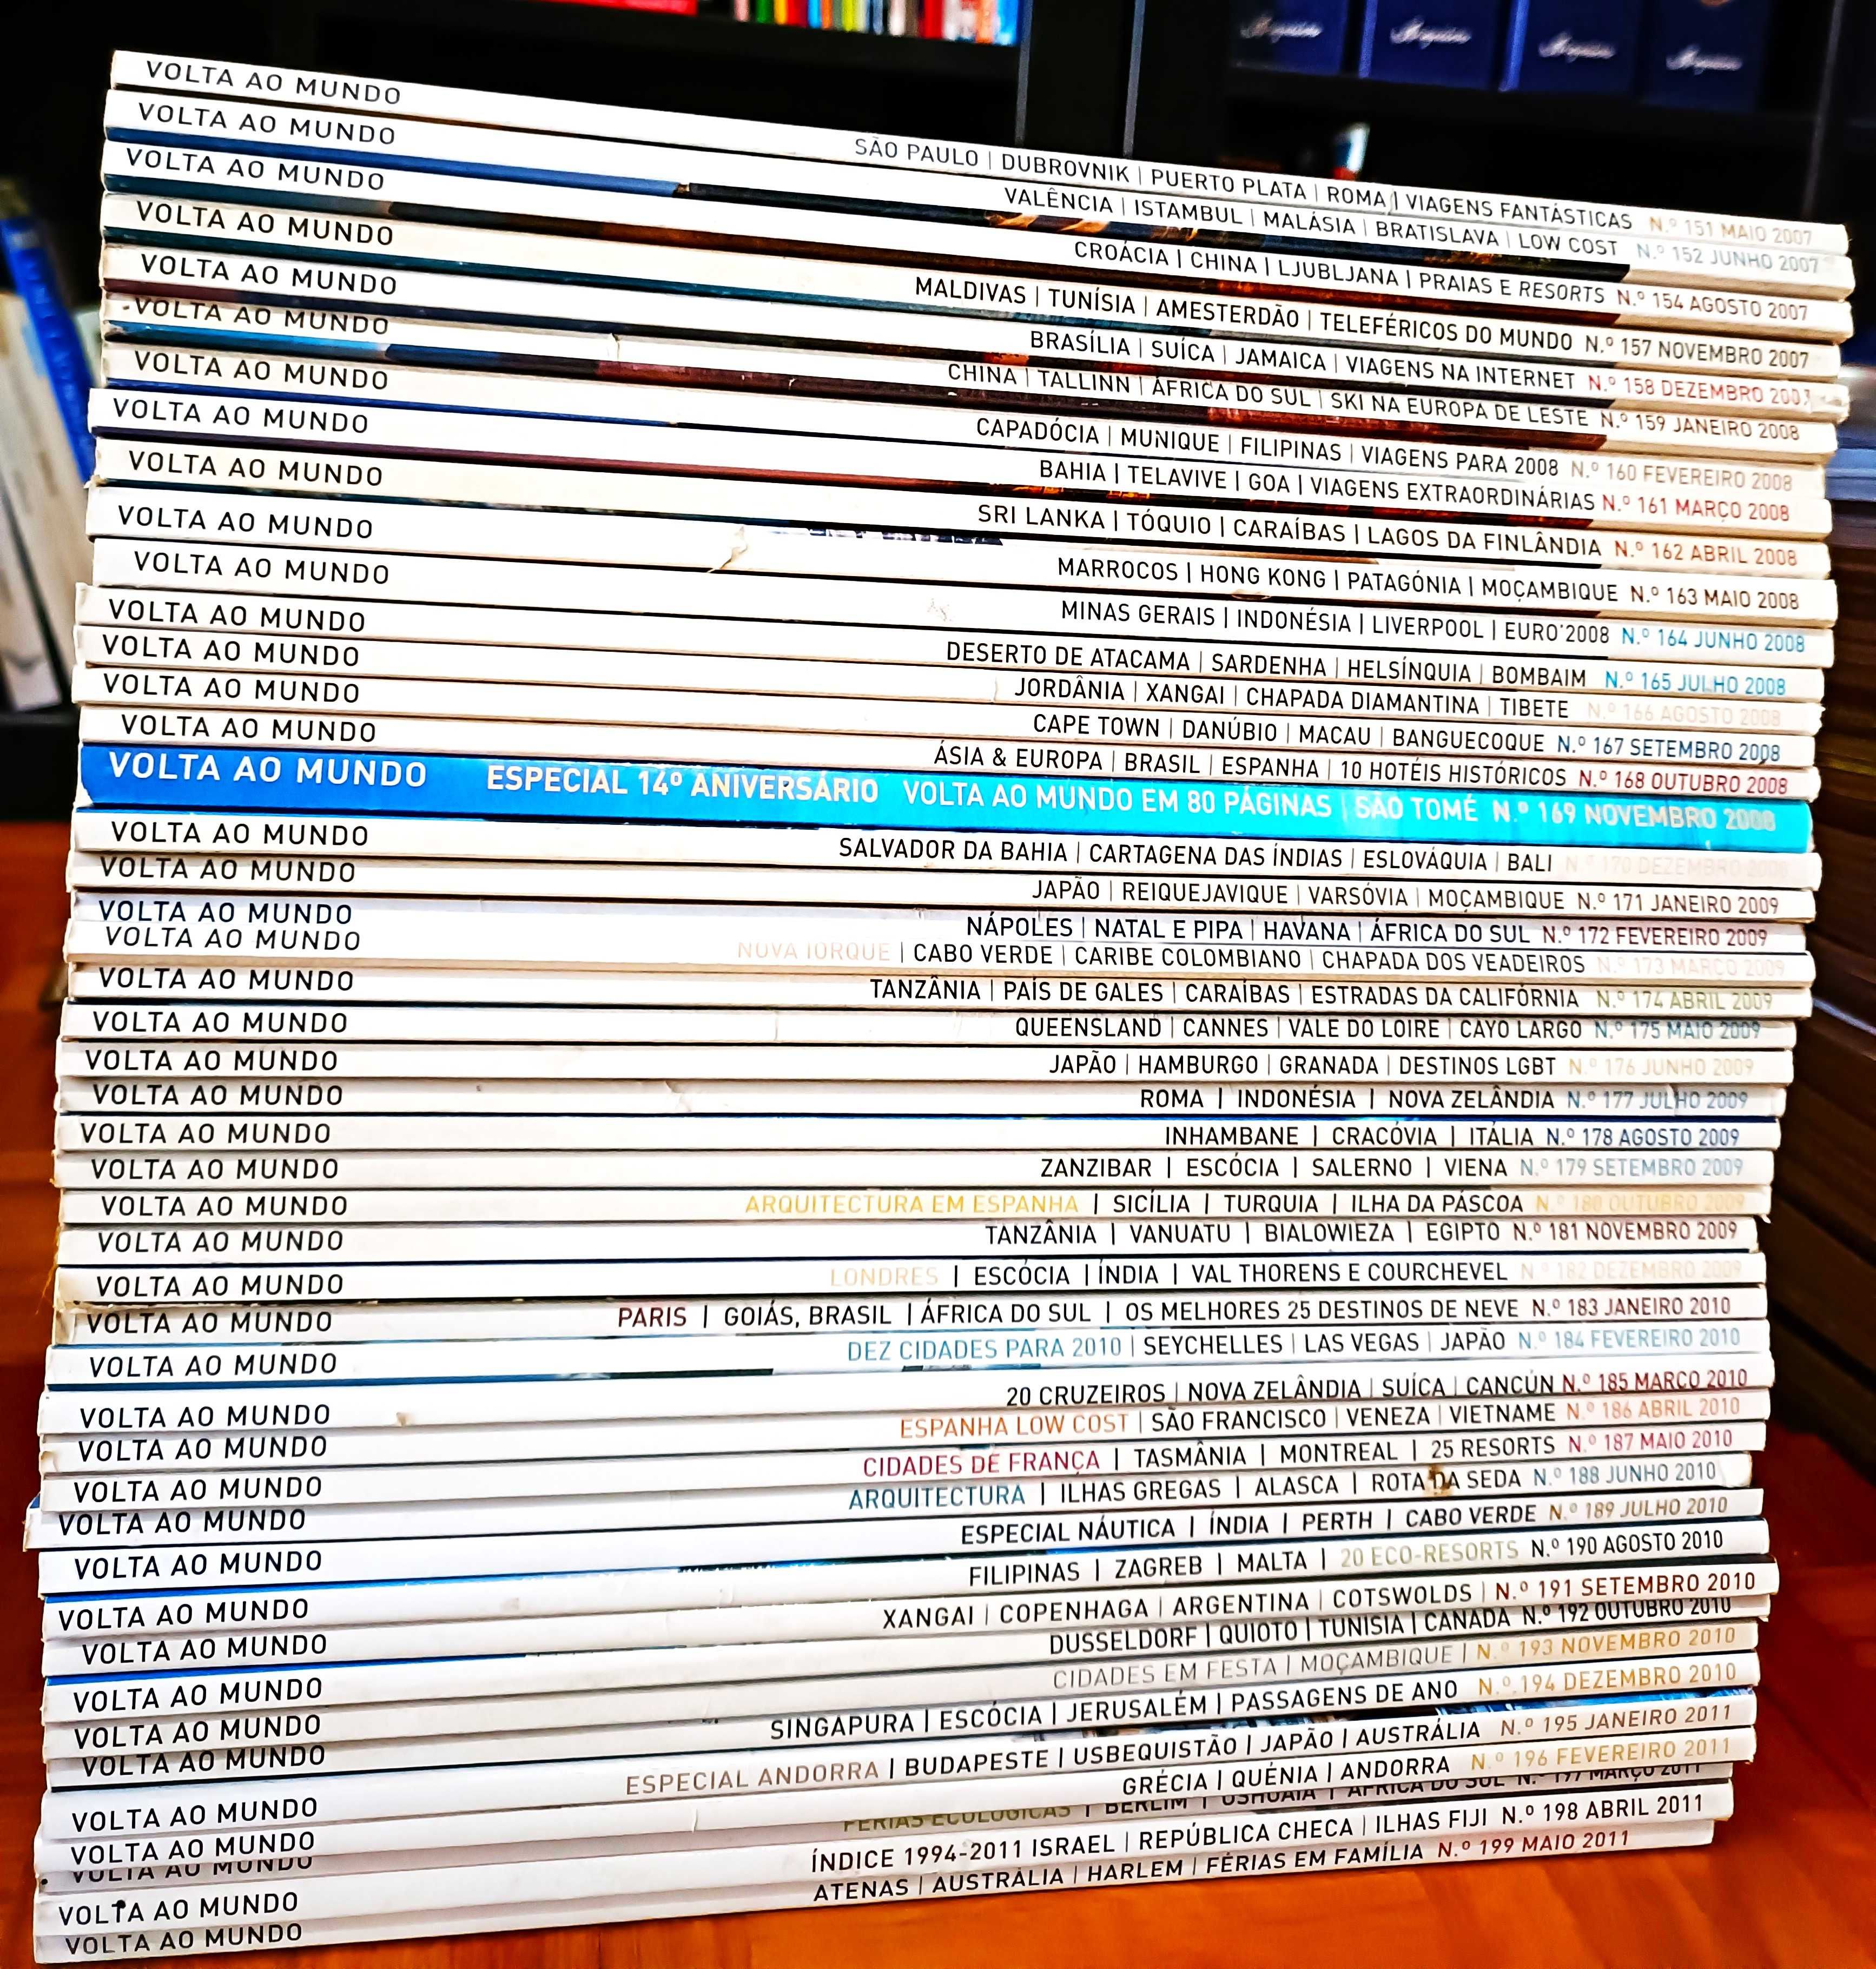 Colecção de 185 revistas "Volta Ao Mundo"